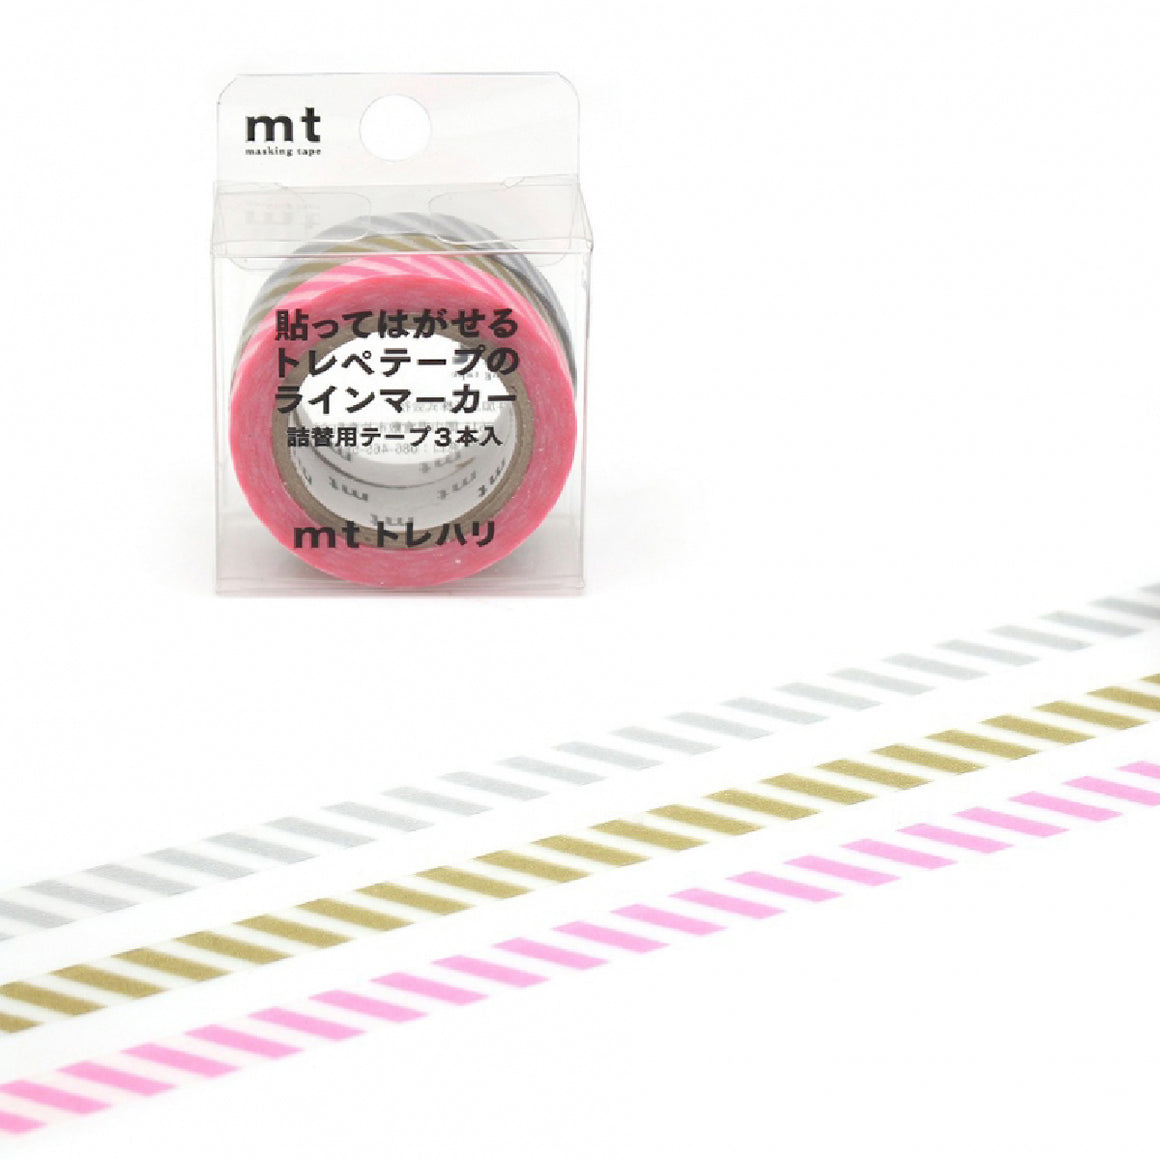 mt Trehari Washi Tape Cutter REFILL TAPE - Set D Striped